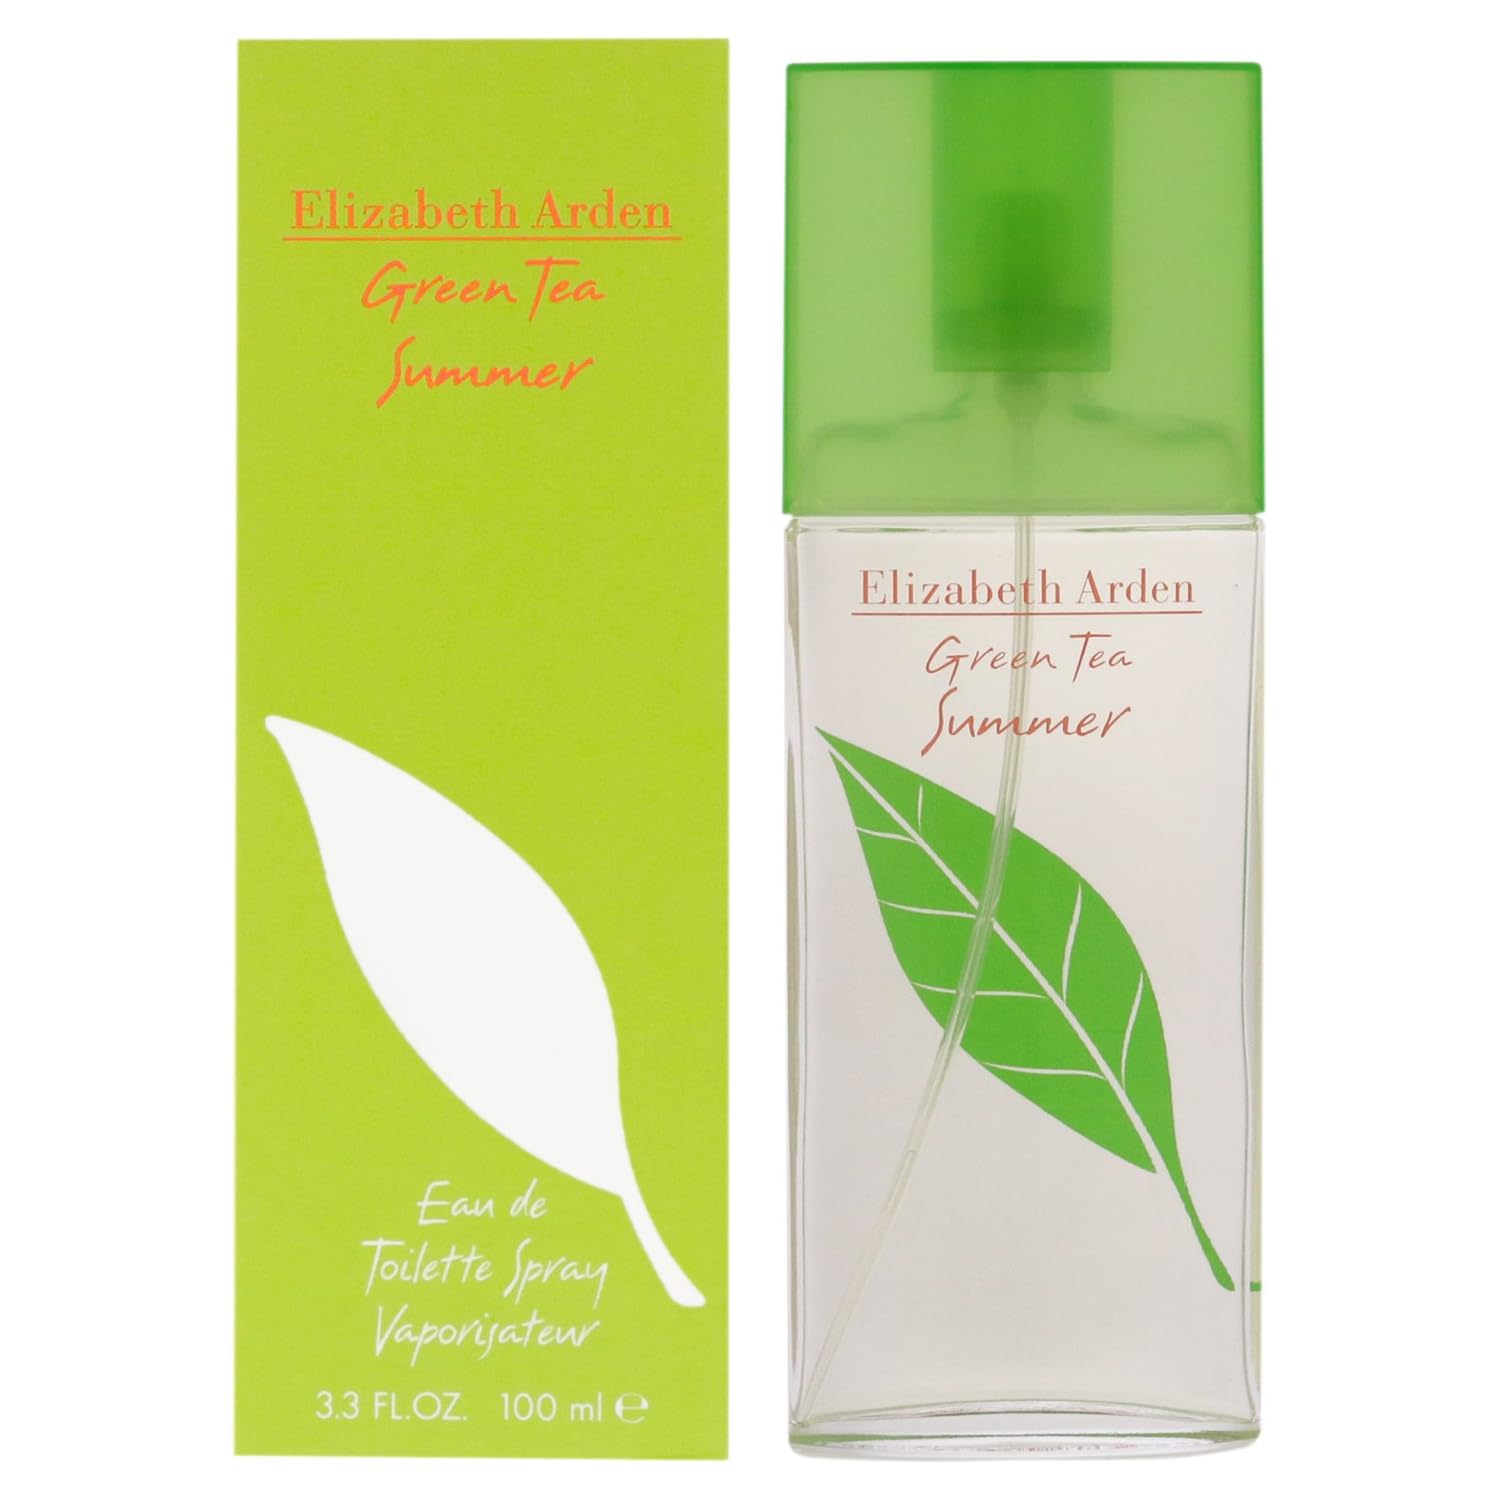 Elizabeth Arden Green Tea Summer for women perfume (100 ml) Beautiful